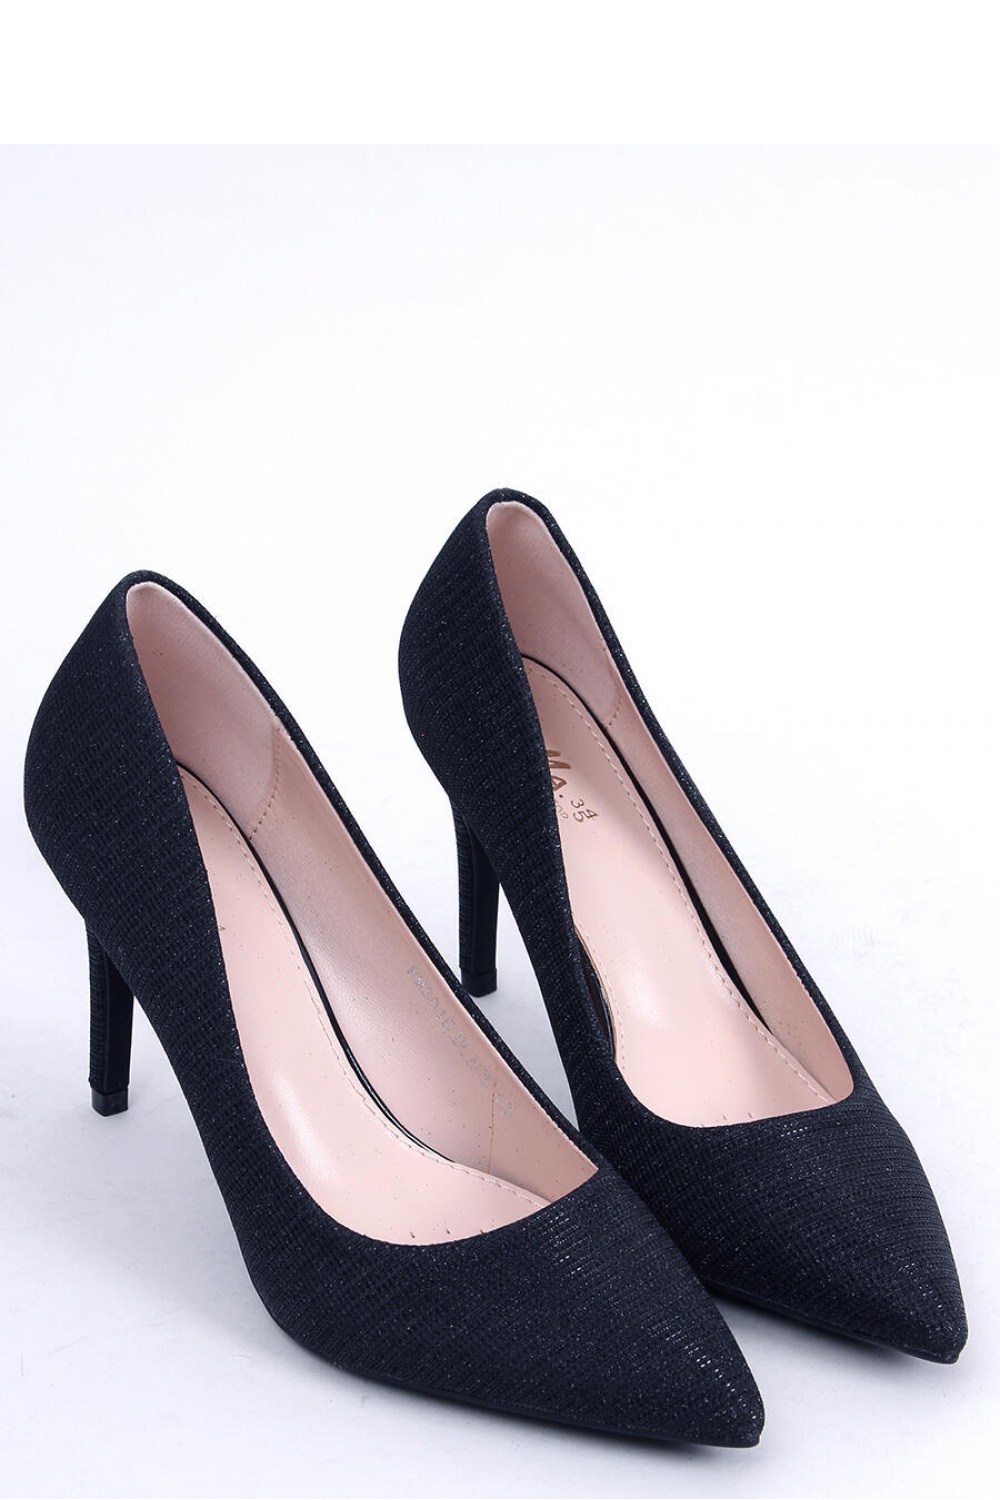 High heels model 173585 Inello